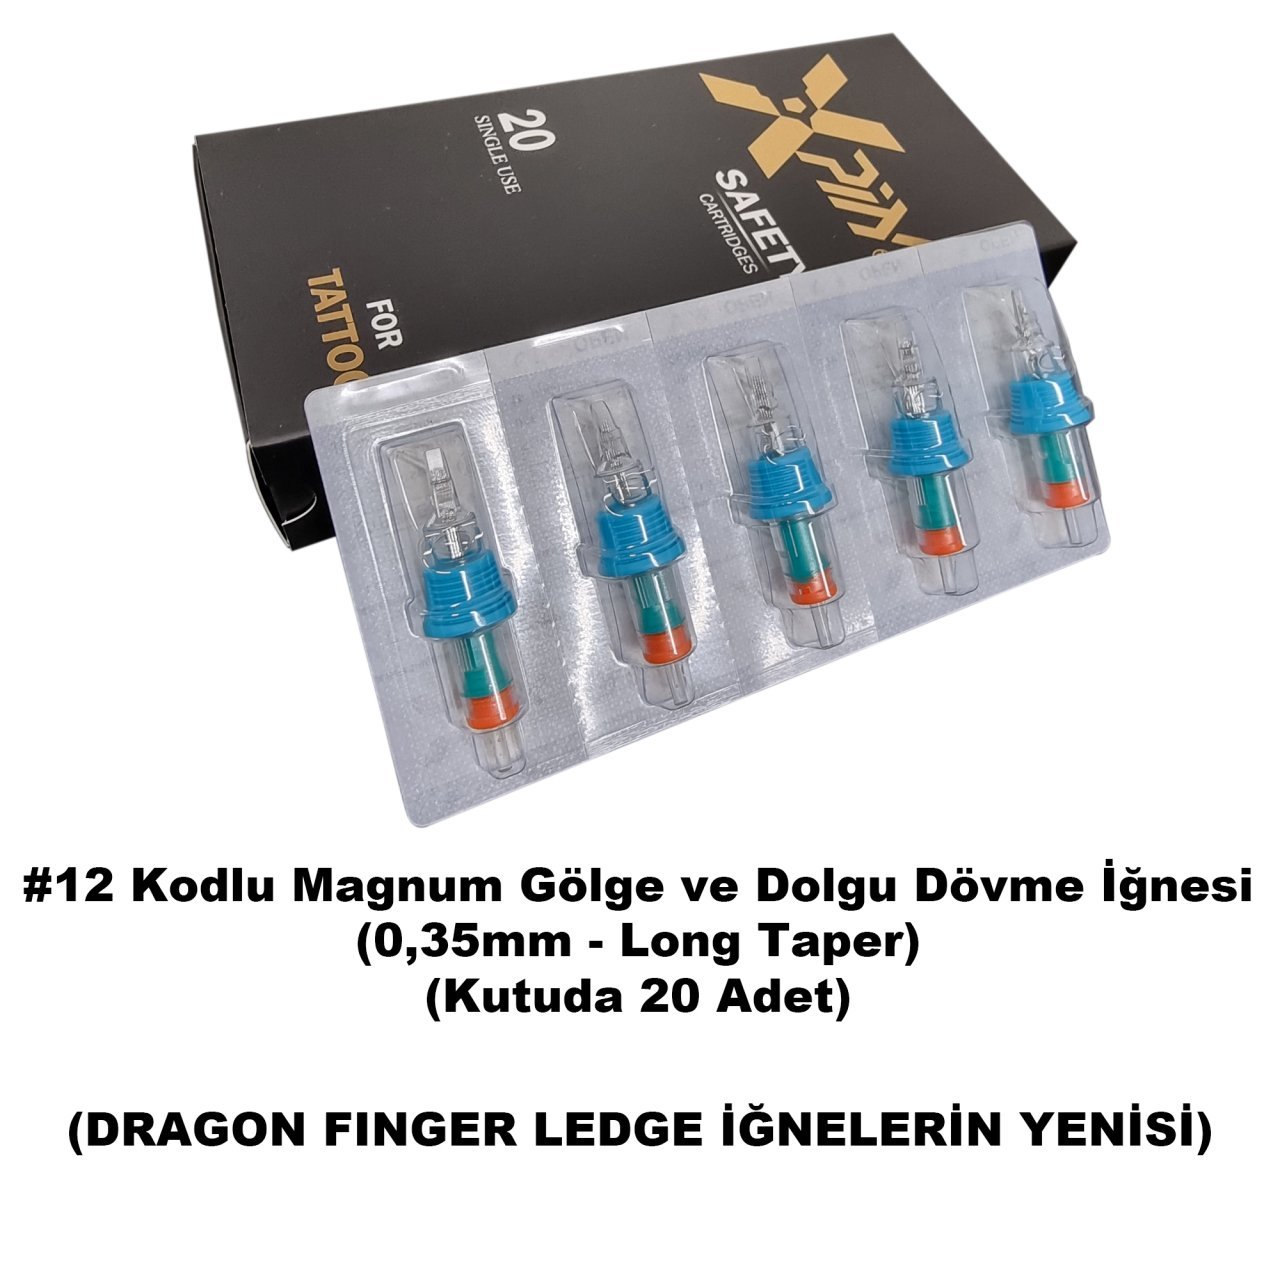 Dragon Xpin Finger Ledge #12 Kodlu Magnum Long Taper Kartuş Dövme İğnesi Gölge ve Dolgu İçin Cartridge İğne